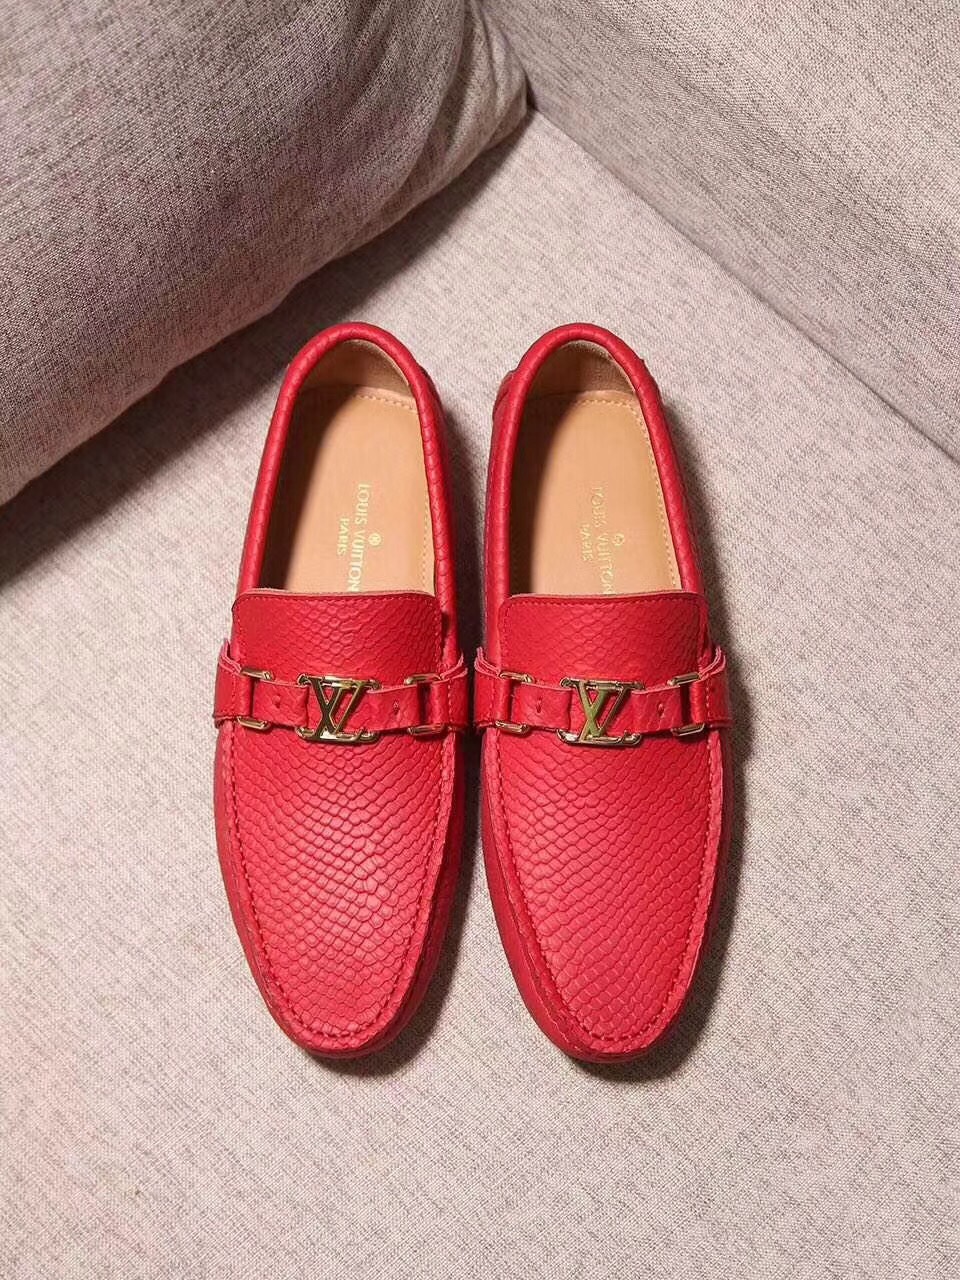 Giày lười nam Louis Vuitton siêu cấp - GNLV071